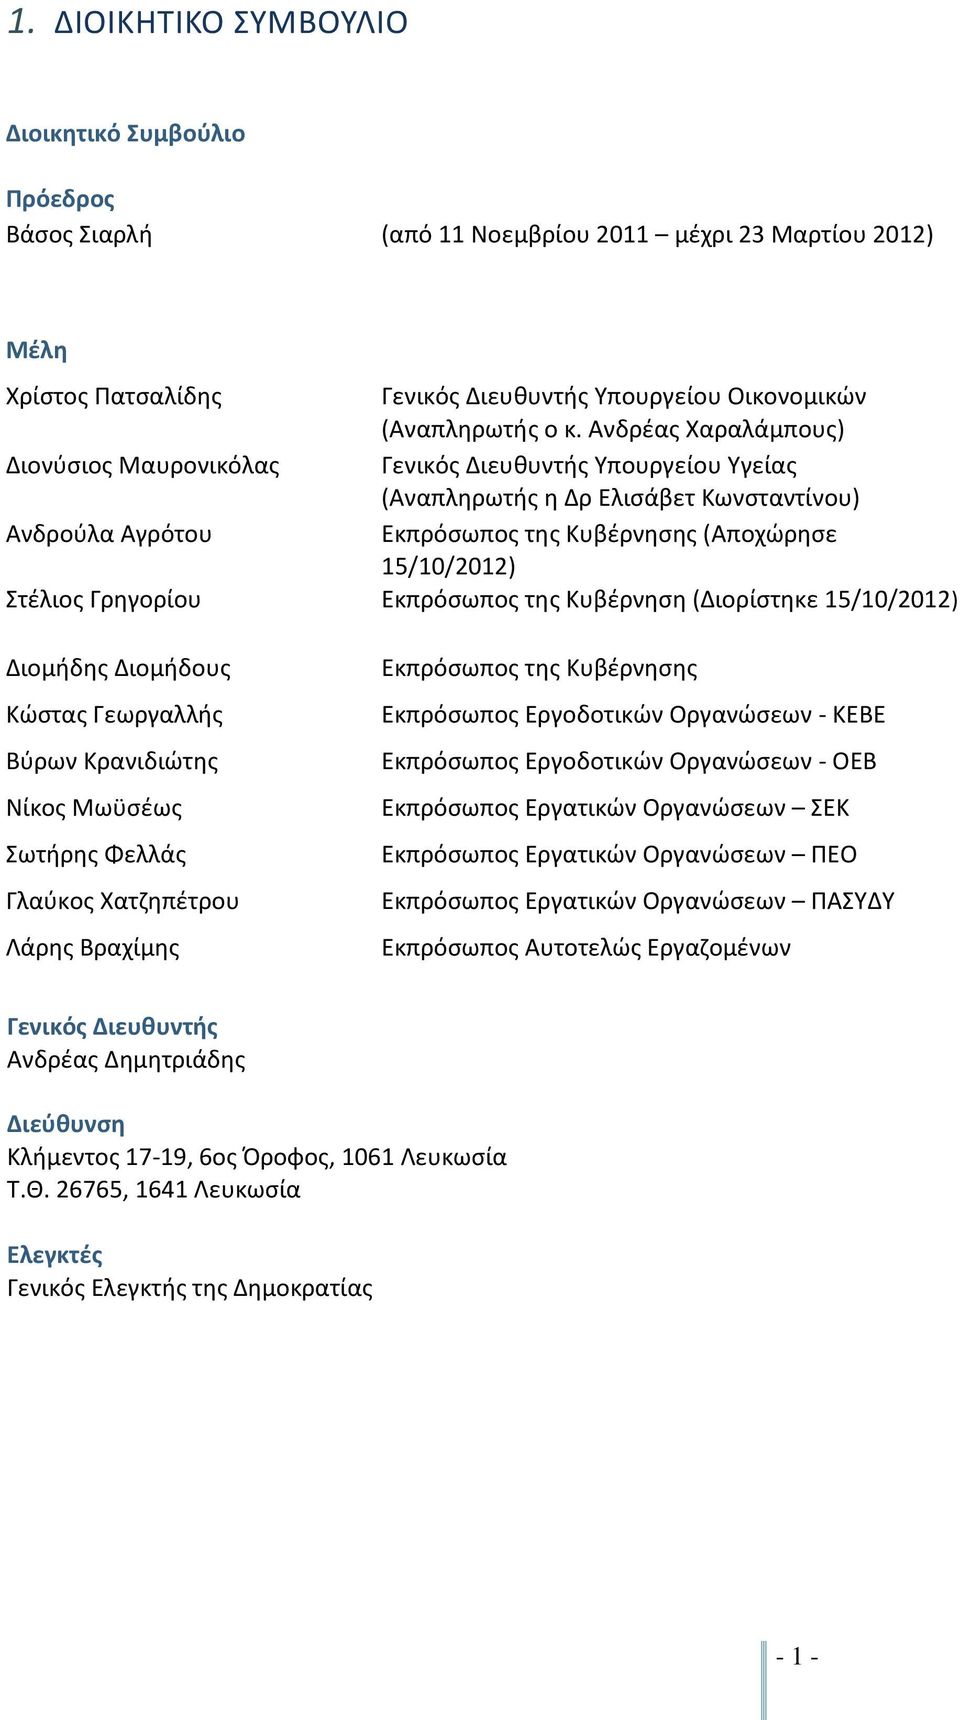 Ανδρέας Χαραλάμπους) Γενικός Διευθυντής Υπουργείου Υγείας (Αναπληρωτής η Δρ Ελισάβετ Κωνσταντίνου) Εκπρόσωπος της Κυβέρνησης (Αποχώρησε 15/10/2012) Εκπρόσωπος της Κυβέρνηση (Διορίστηκε 15/10/2012)